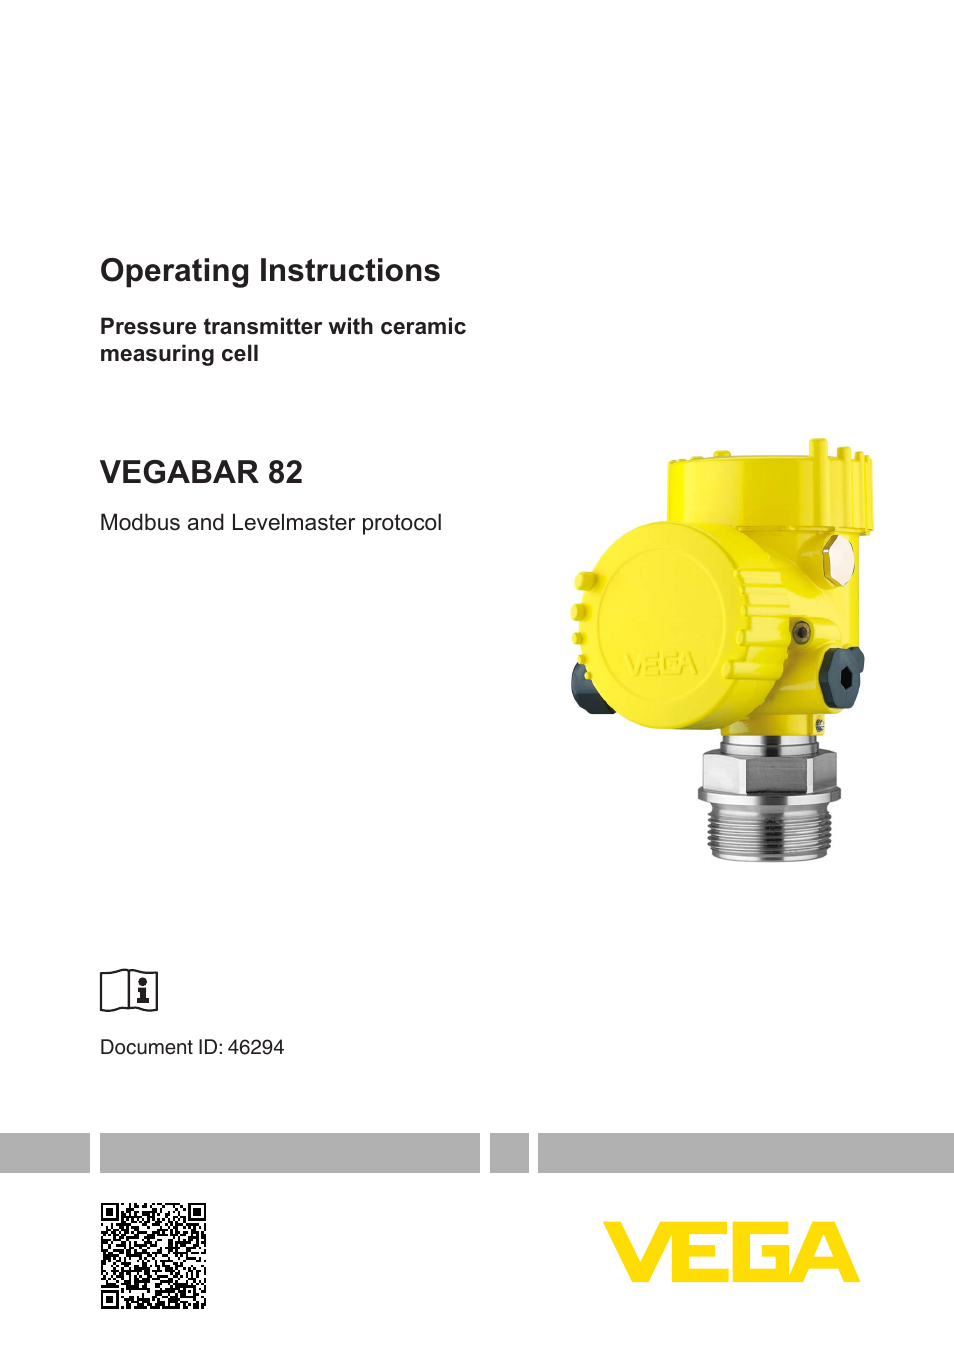 VEGABAR 82 Modbus and Levelmaster protocol - Operating Instructions